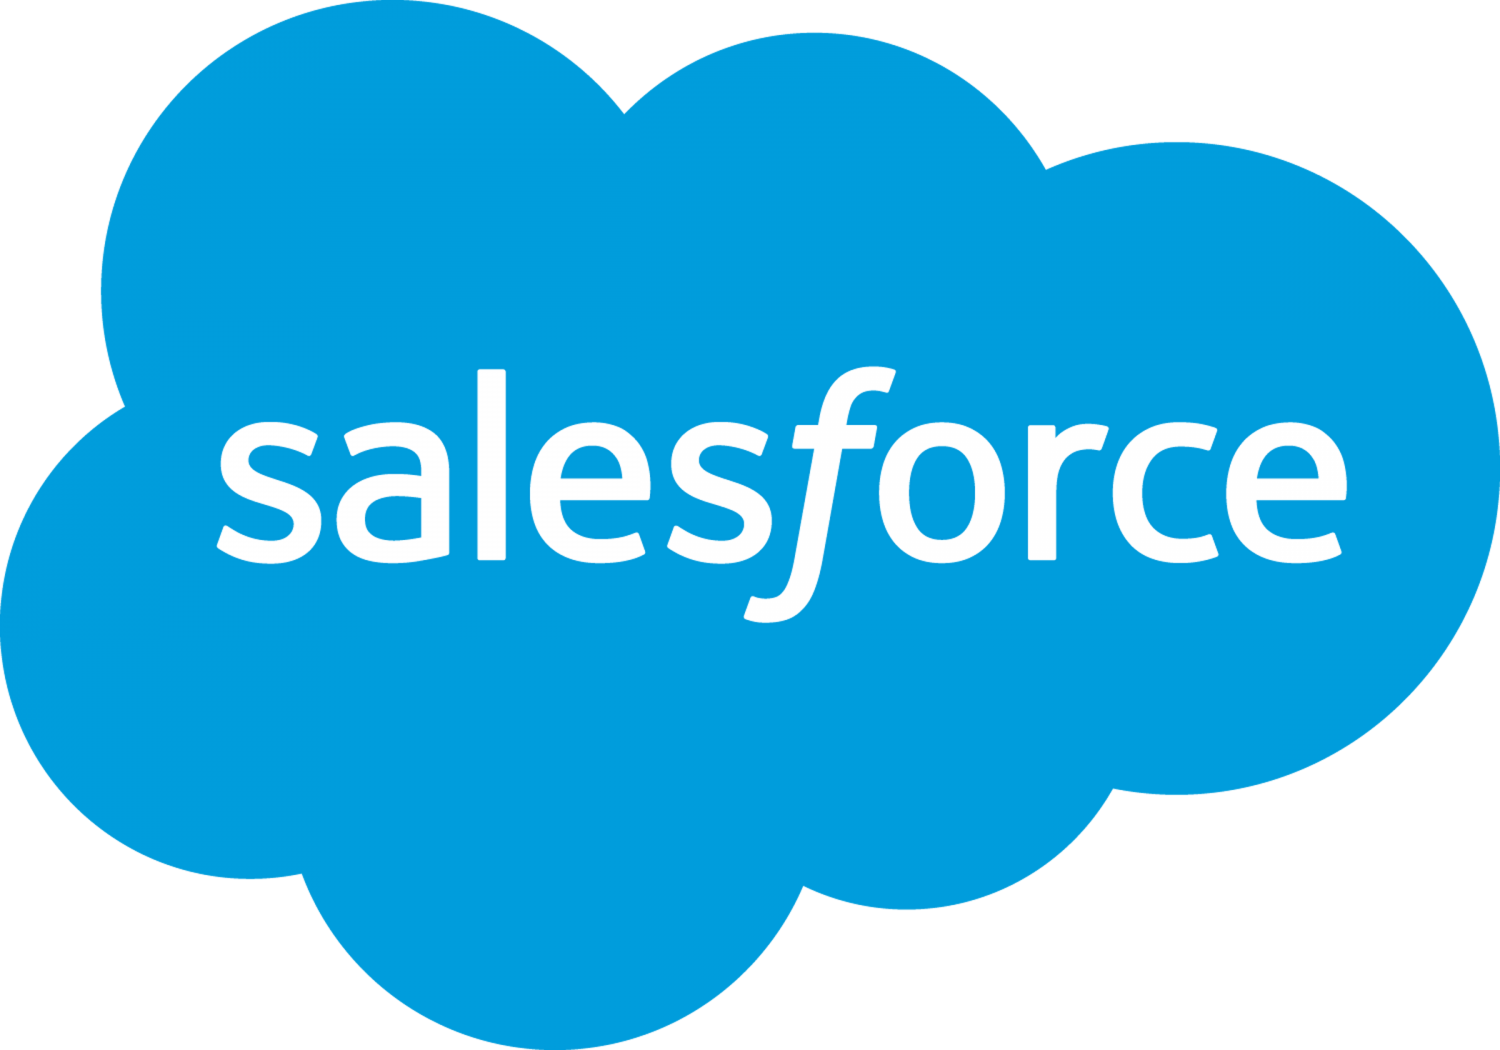 Salesforce - jedna z największych firm technologicznych w Austin